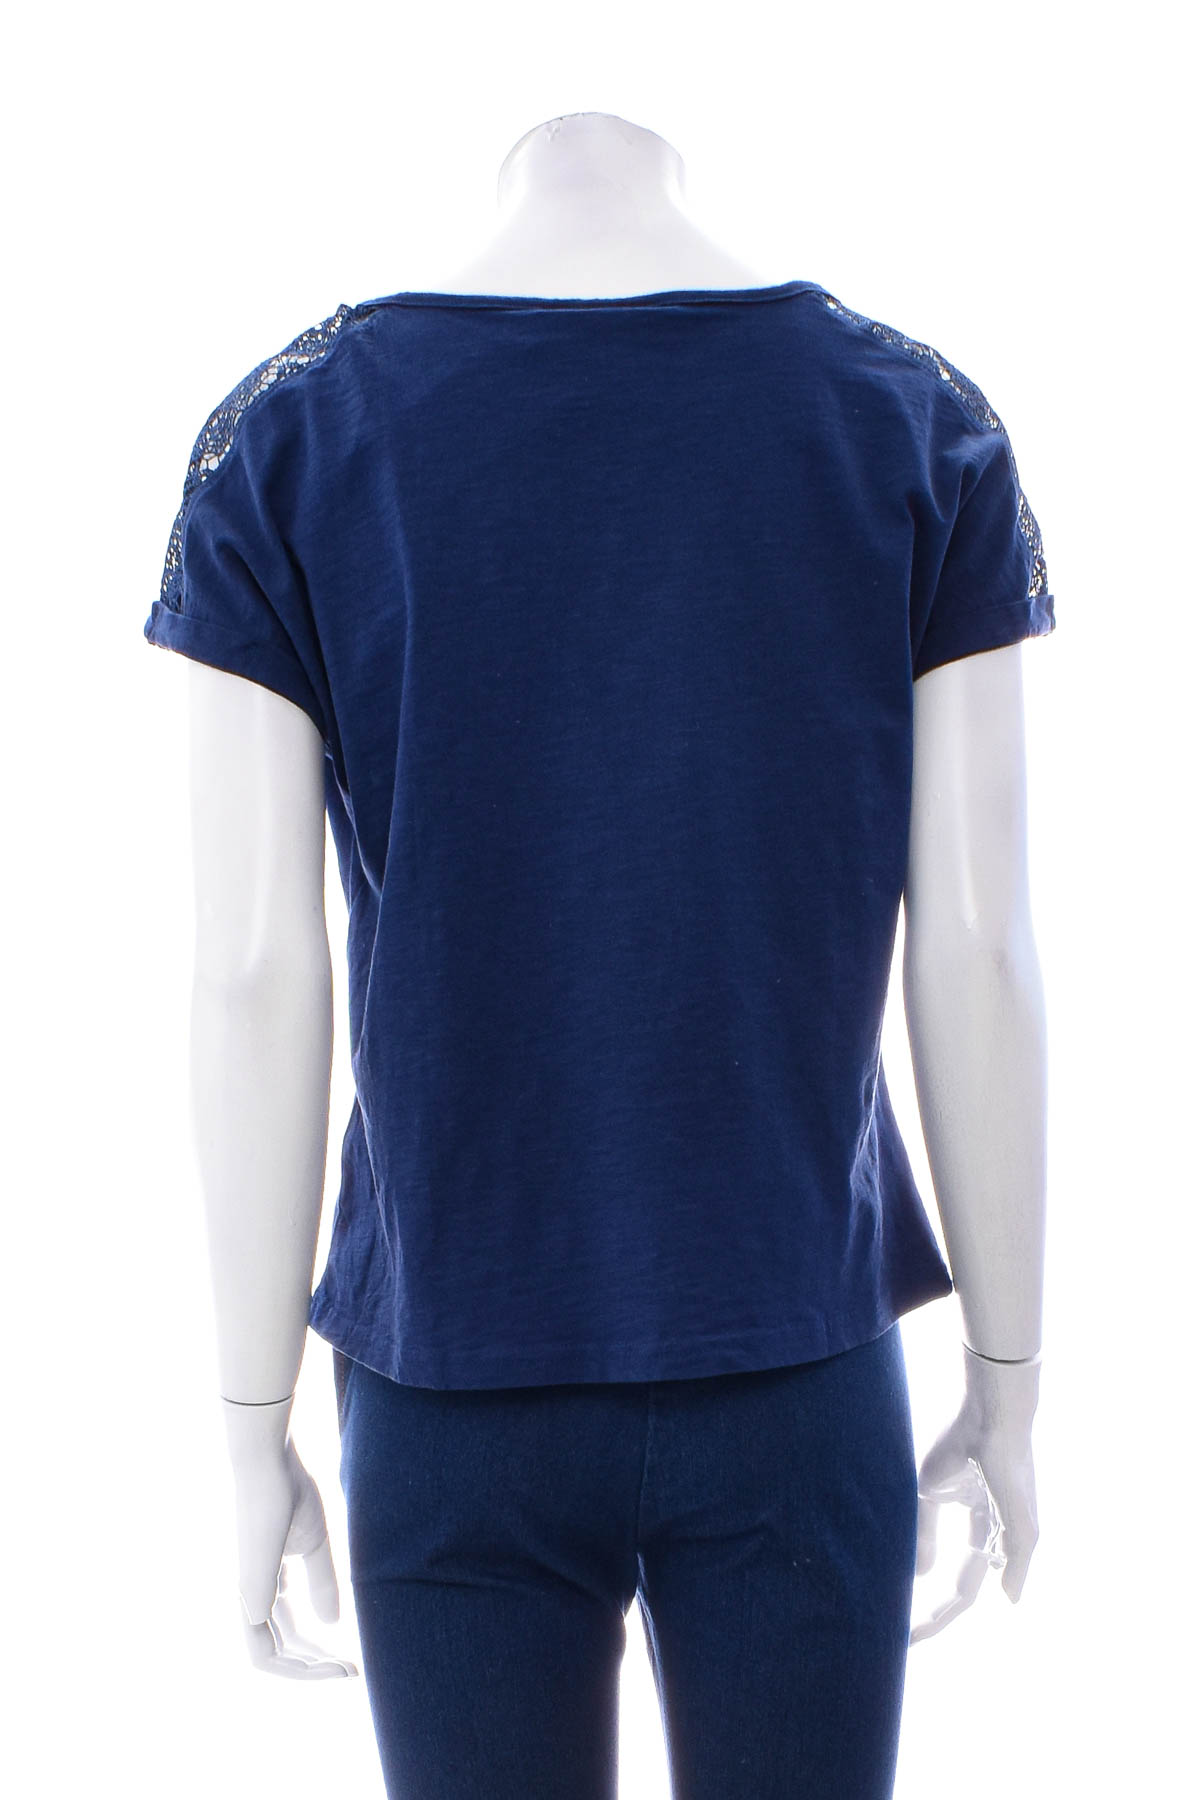 Women's t-shirt - Blue Motion - 1